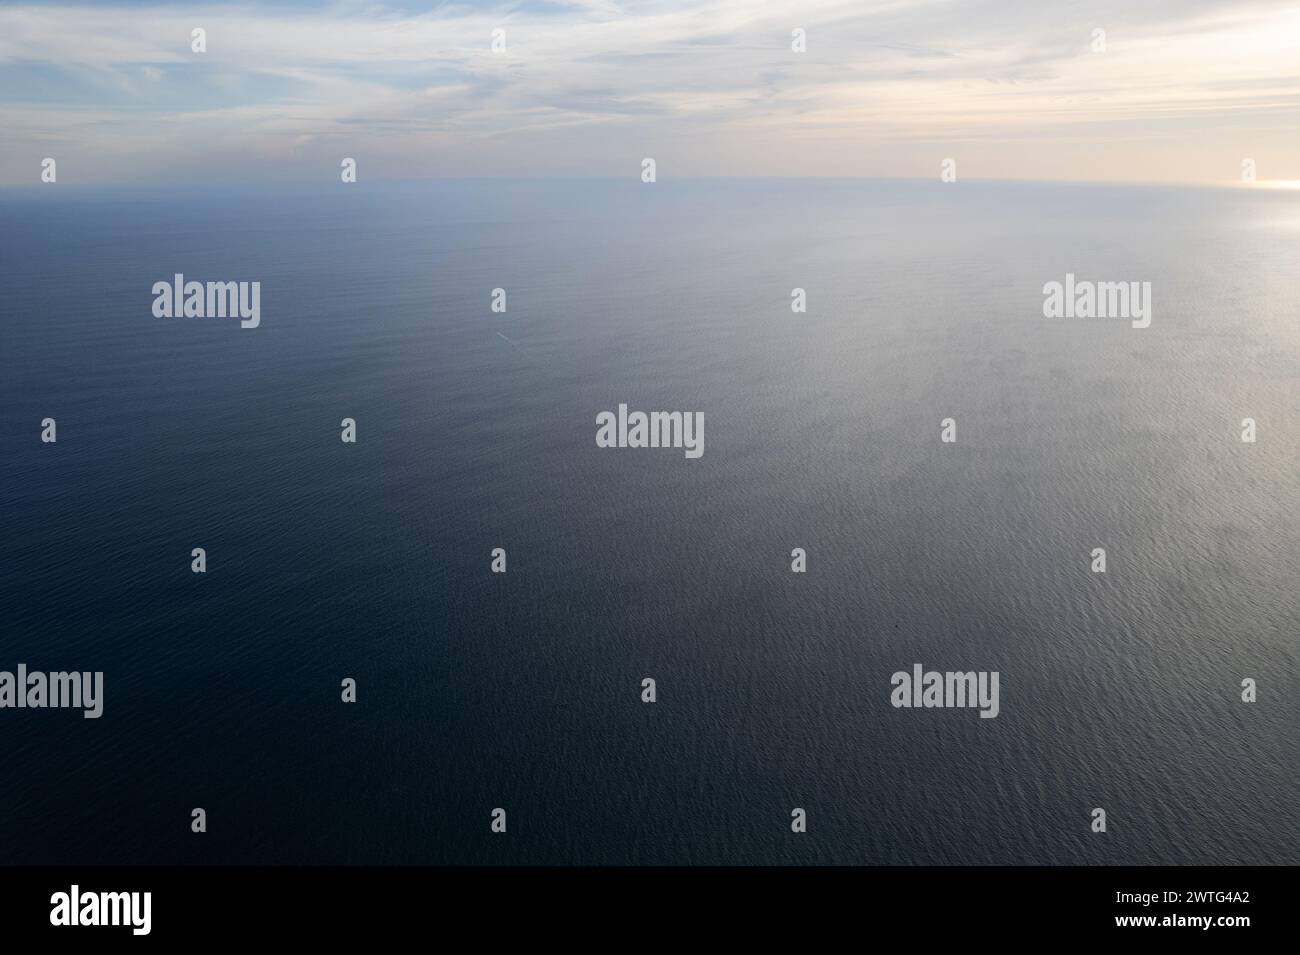 Paysage marin calme dans le paysage océanique vue aérienne drone Banque D'Images